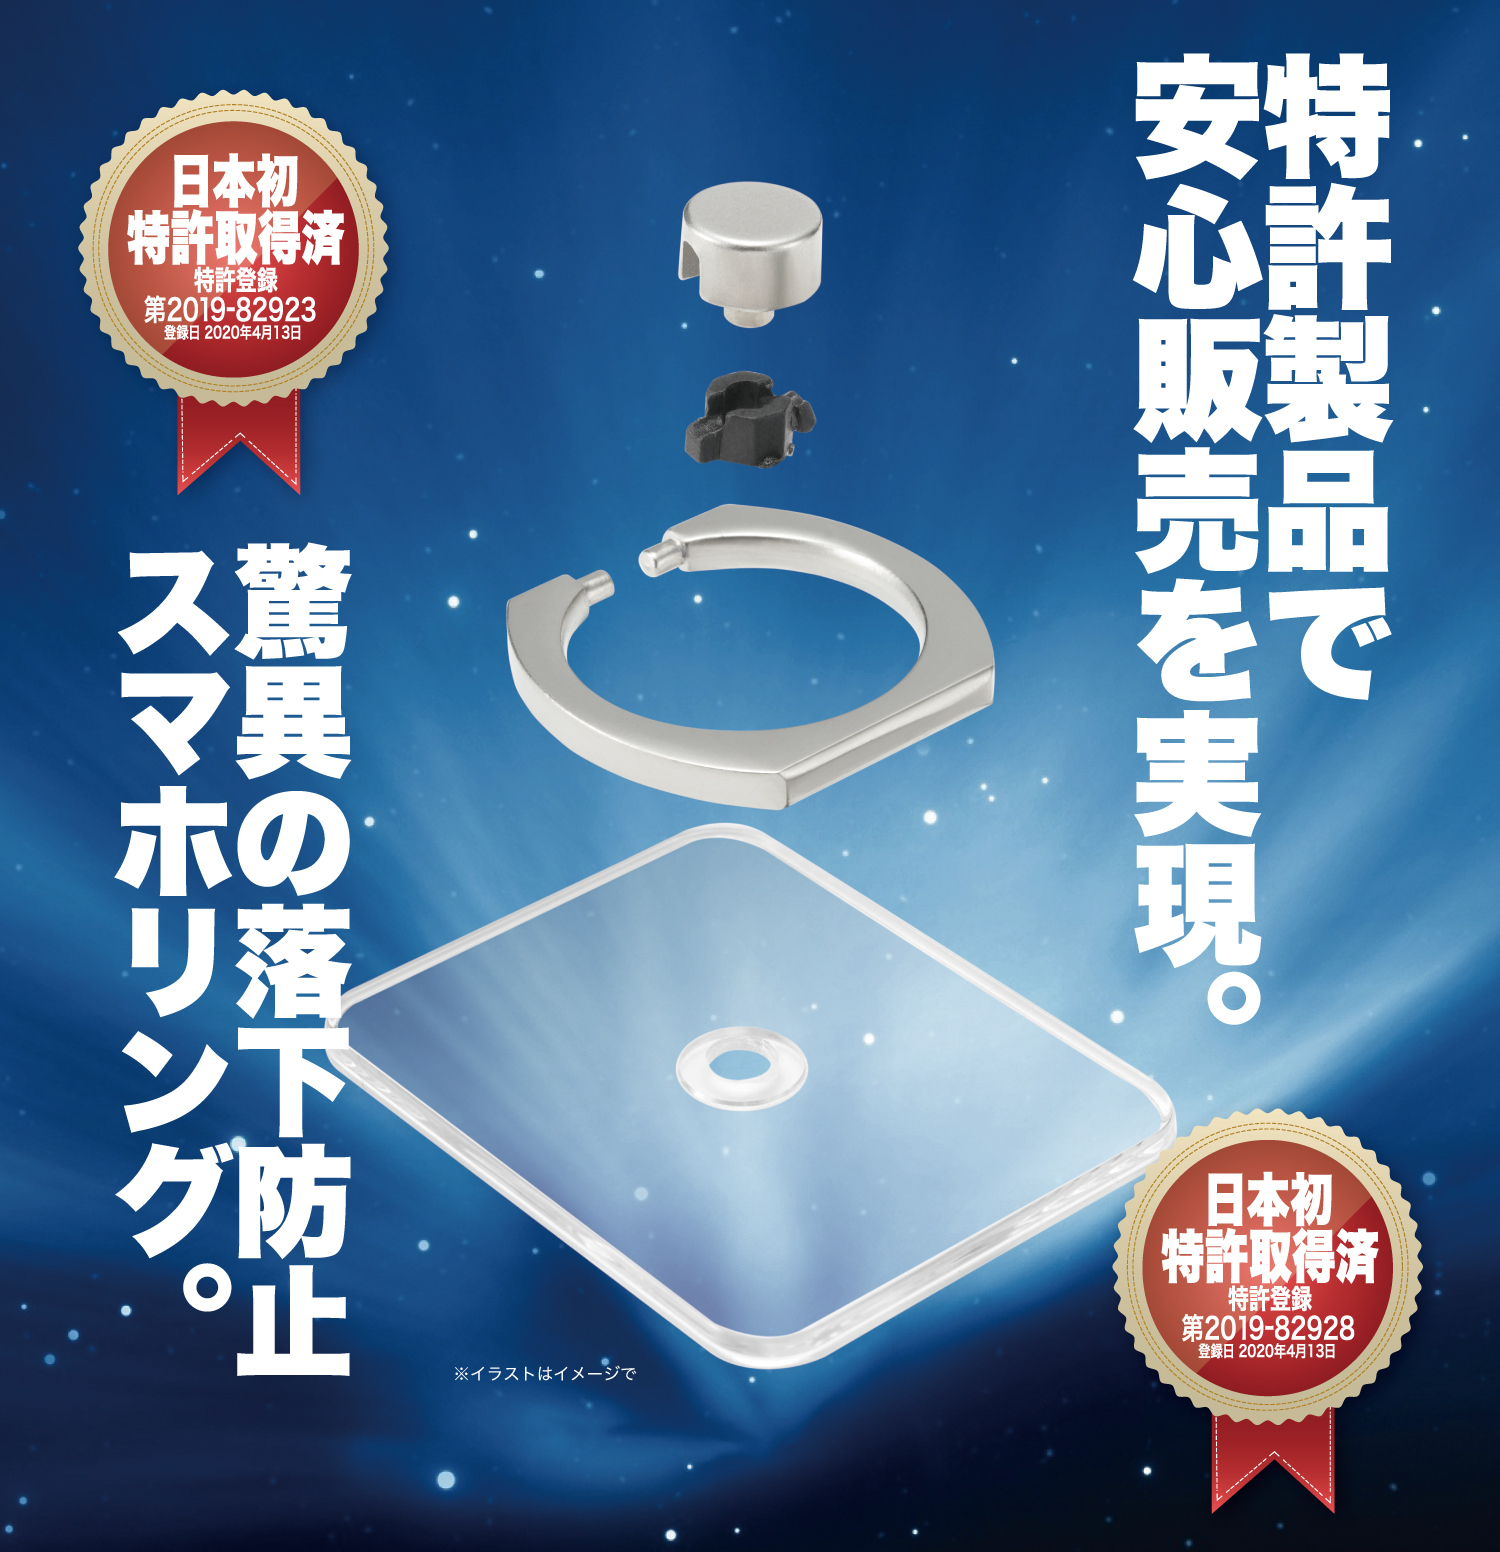 日本初 特許取得の驚異の落下防止 スマホリング ギャレリアのプレスリリース